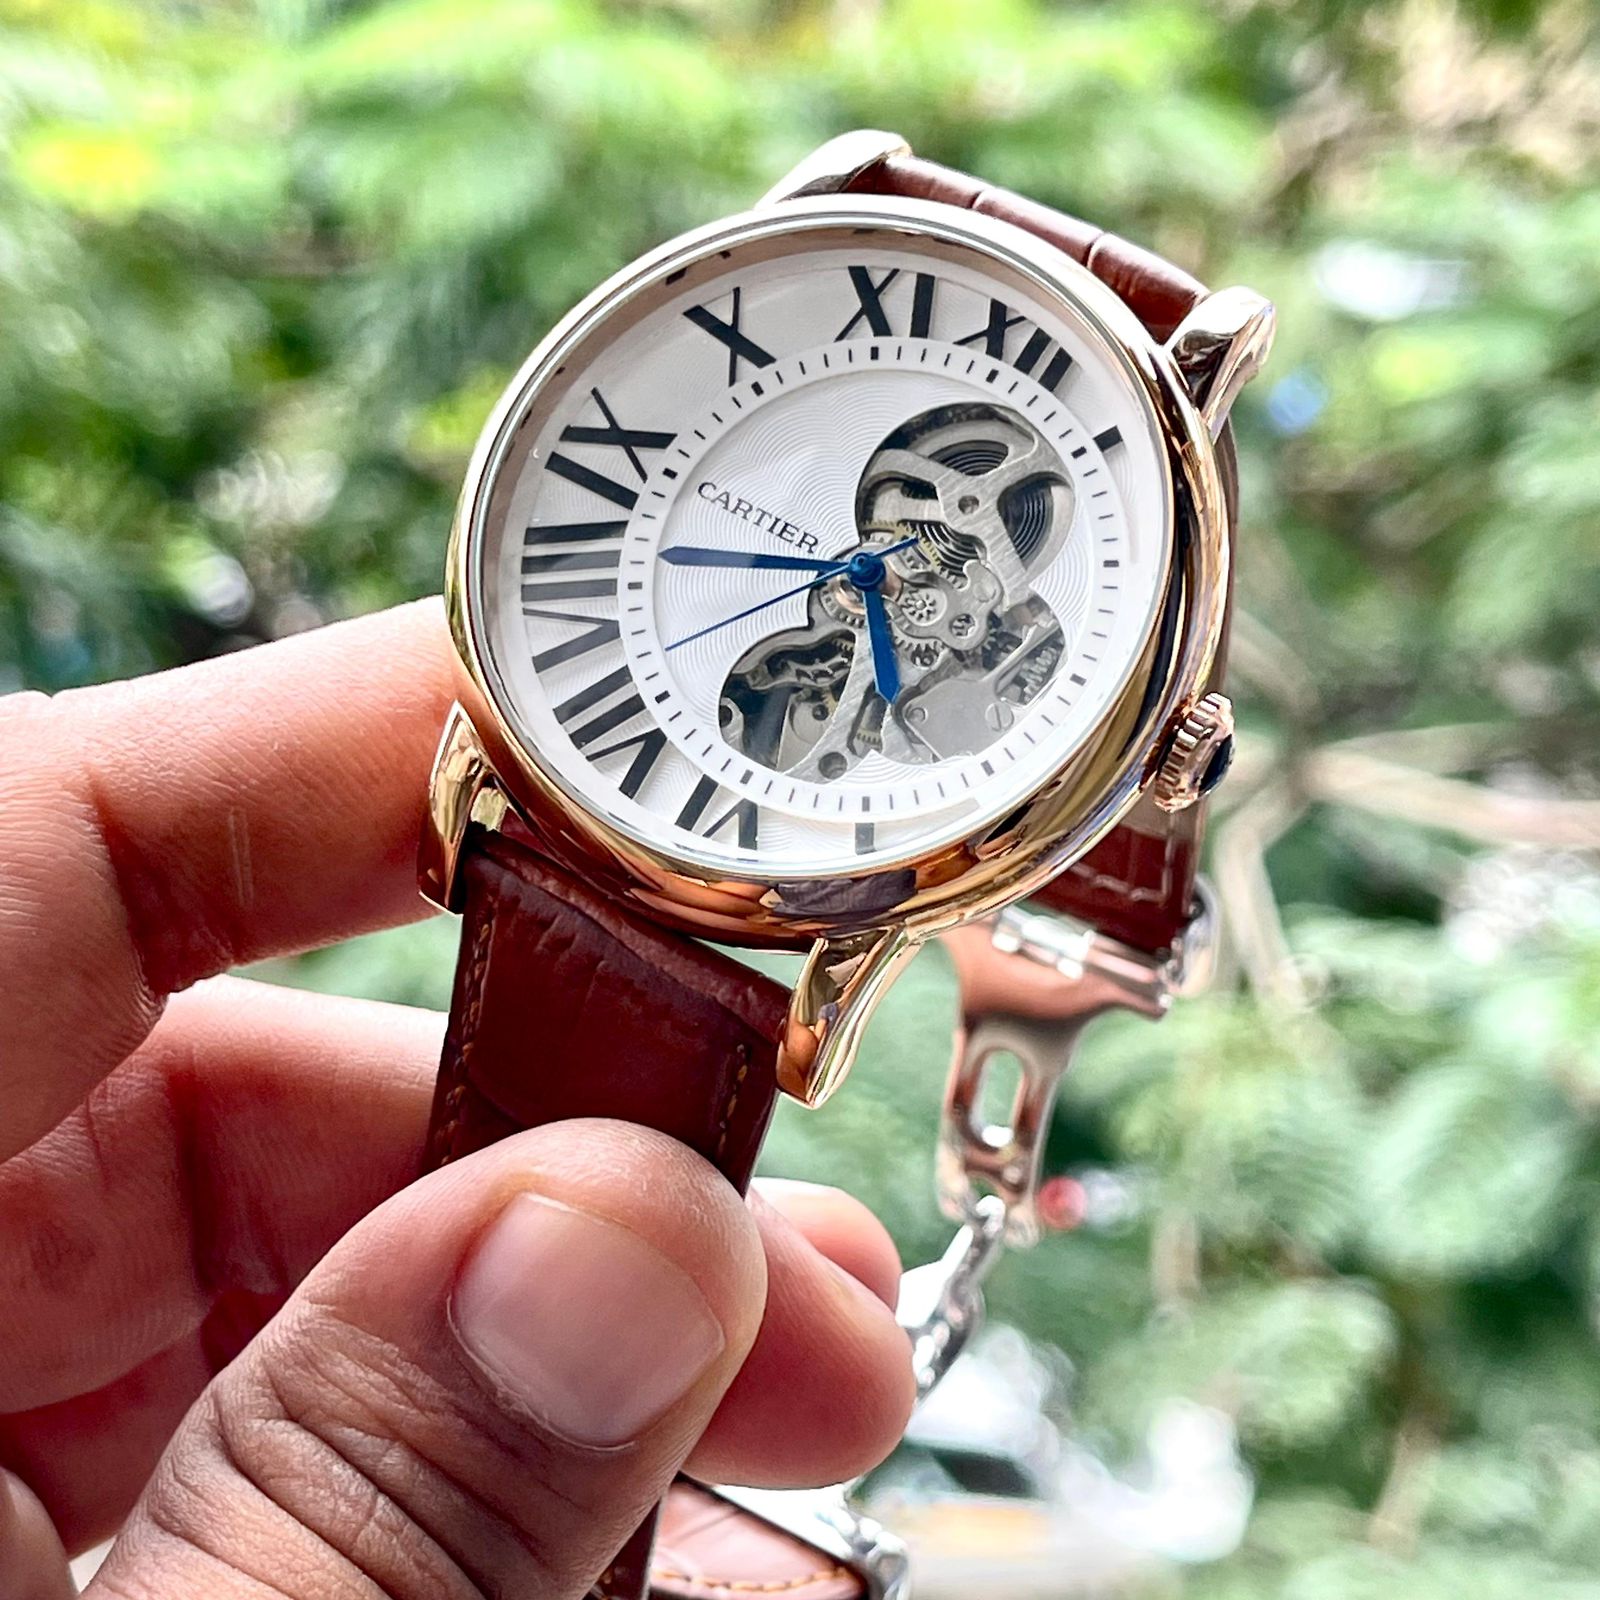 Amazing Luxury Brown leather watch - AmazingBaba